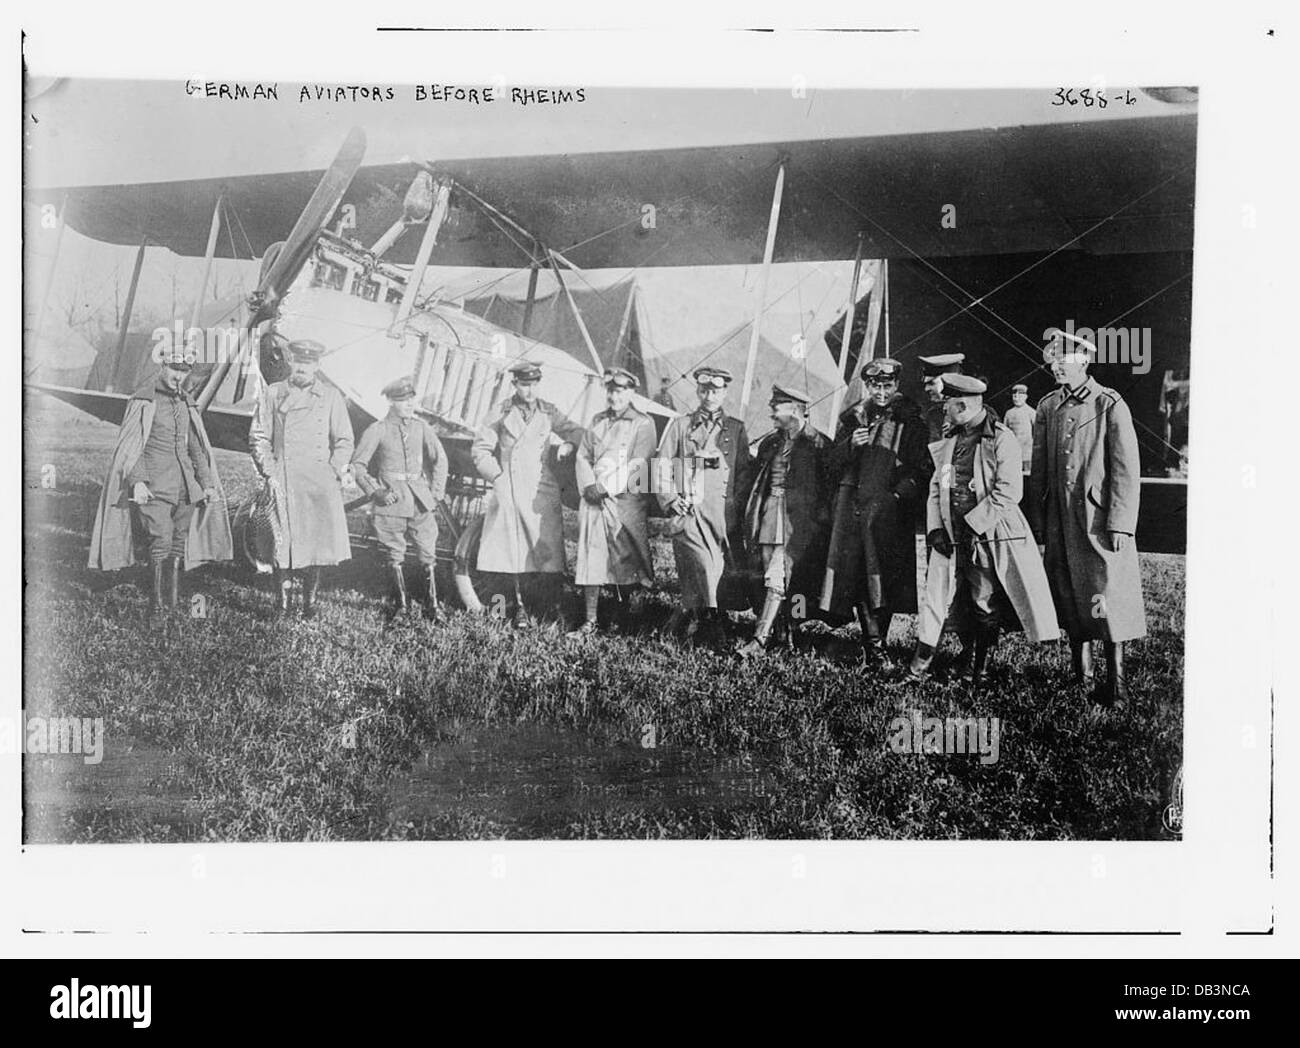 German Aviators before Rheims (LOC) Stock Photo